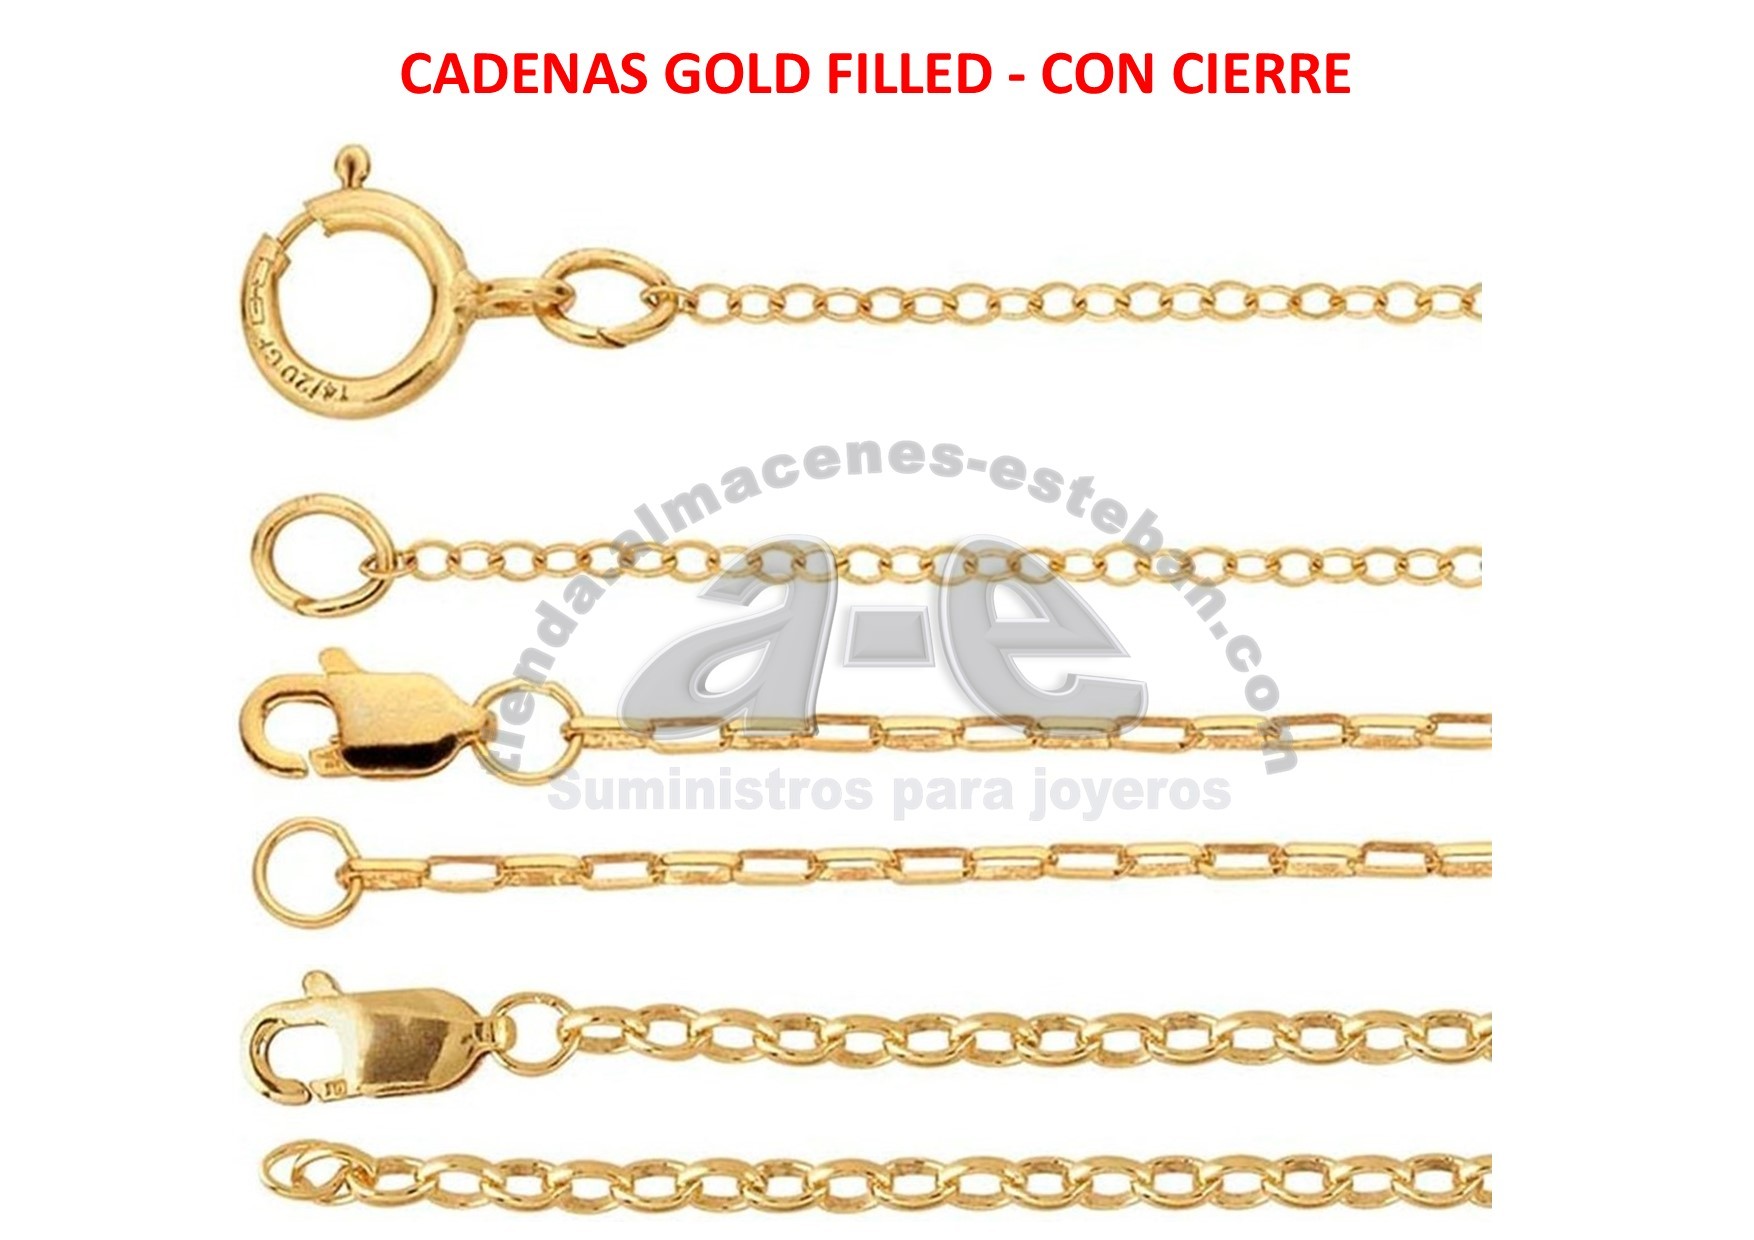 GOLD-FILLED-CADENAS-CIERRE